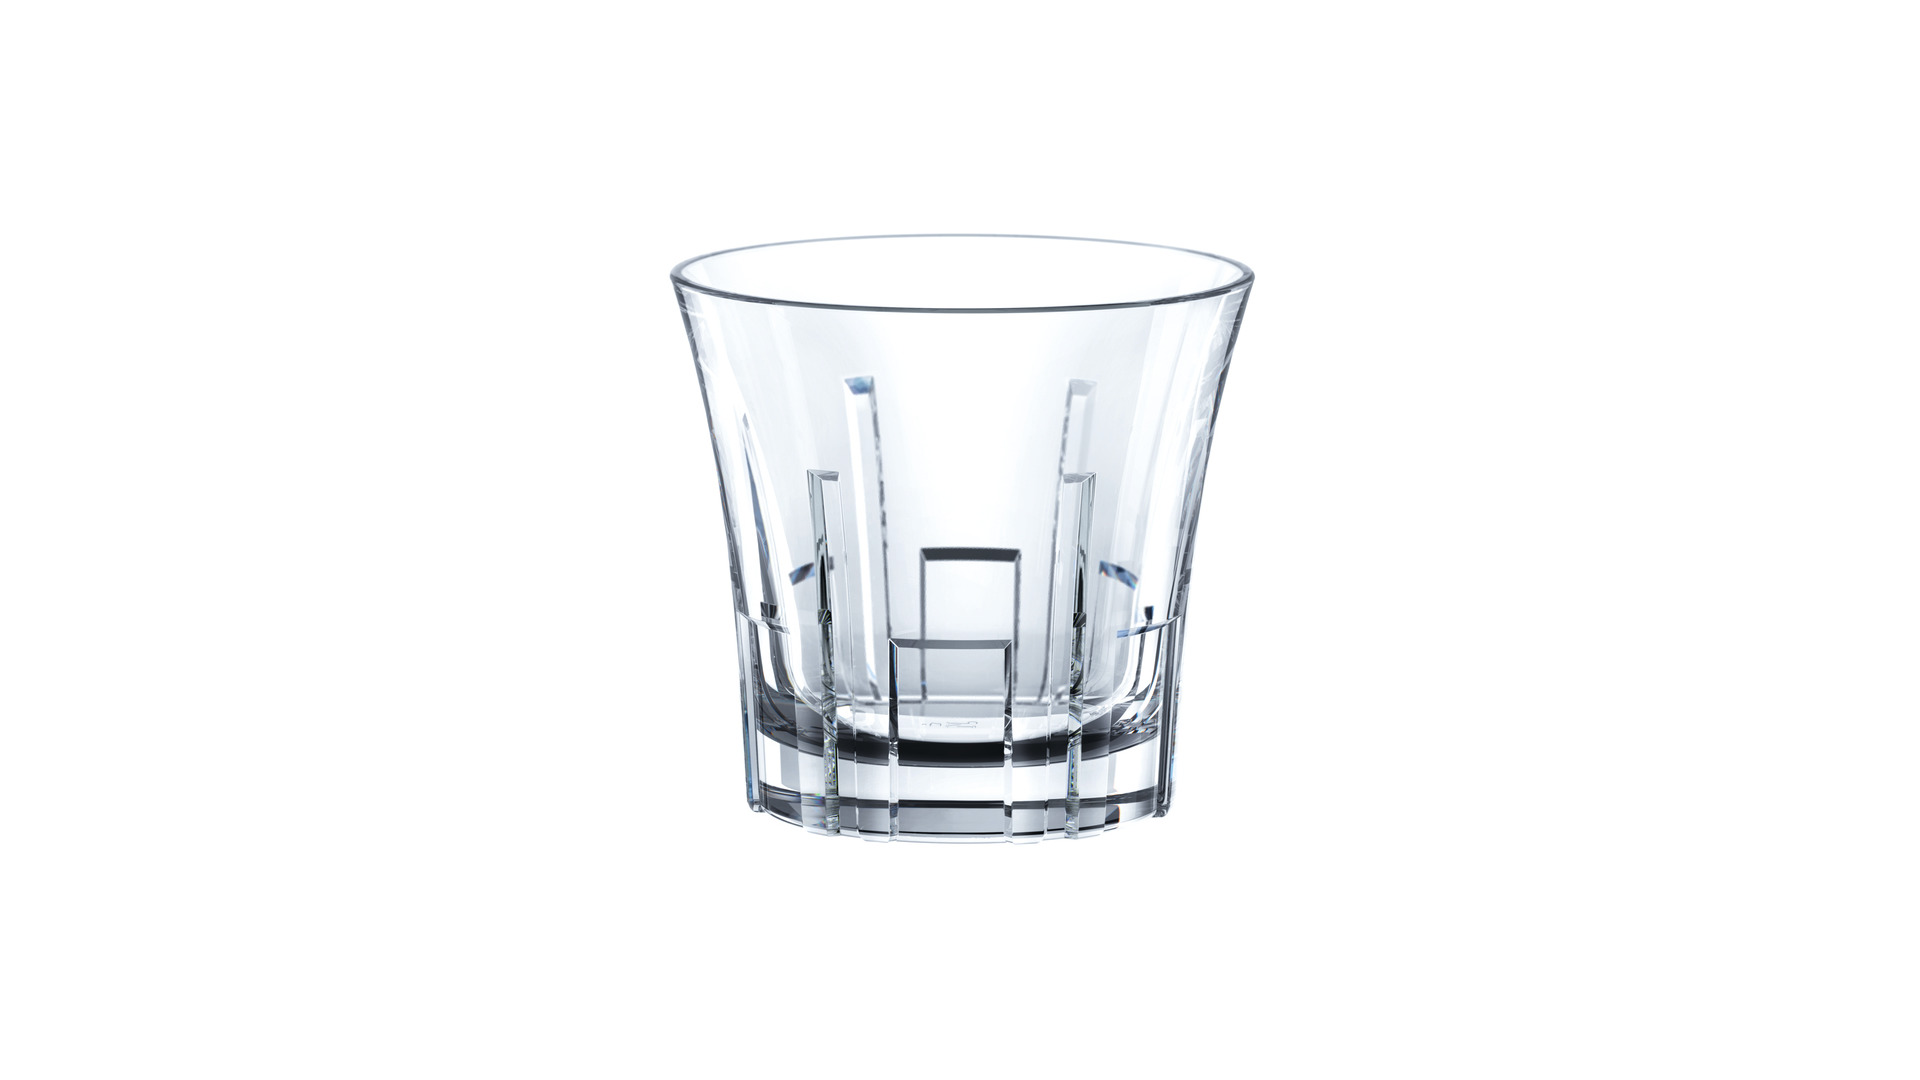 Набор стаканов для виски Nachtmann CLASSIX 247 мл, 4 шт, стекло хрустальное, п/к